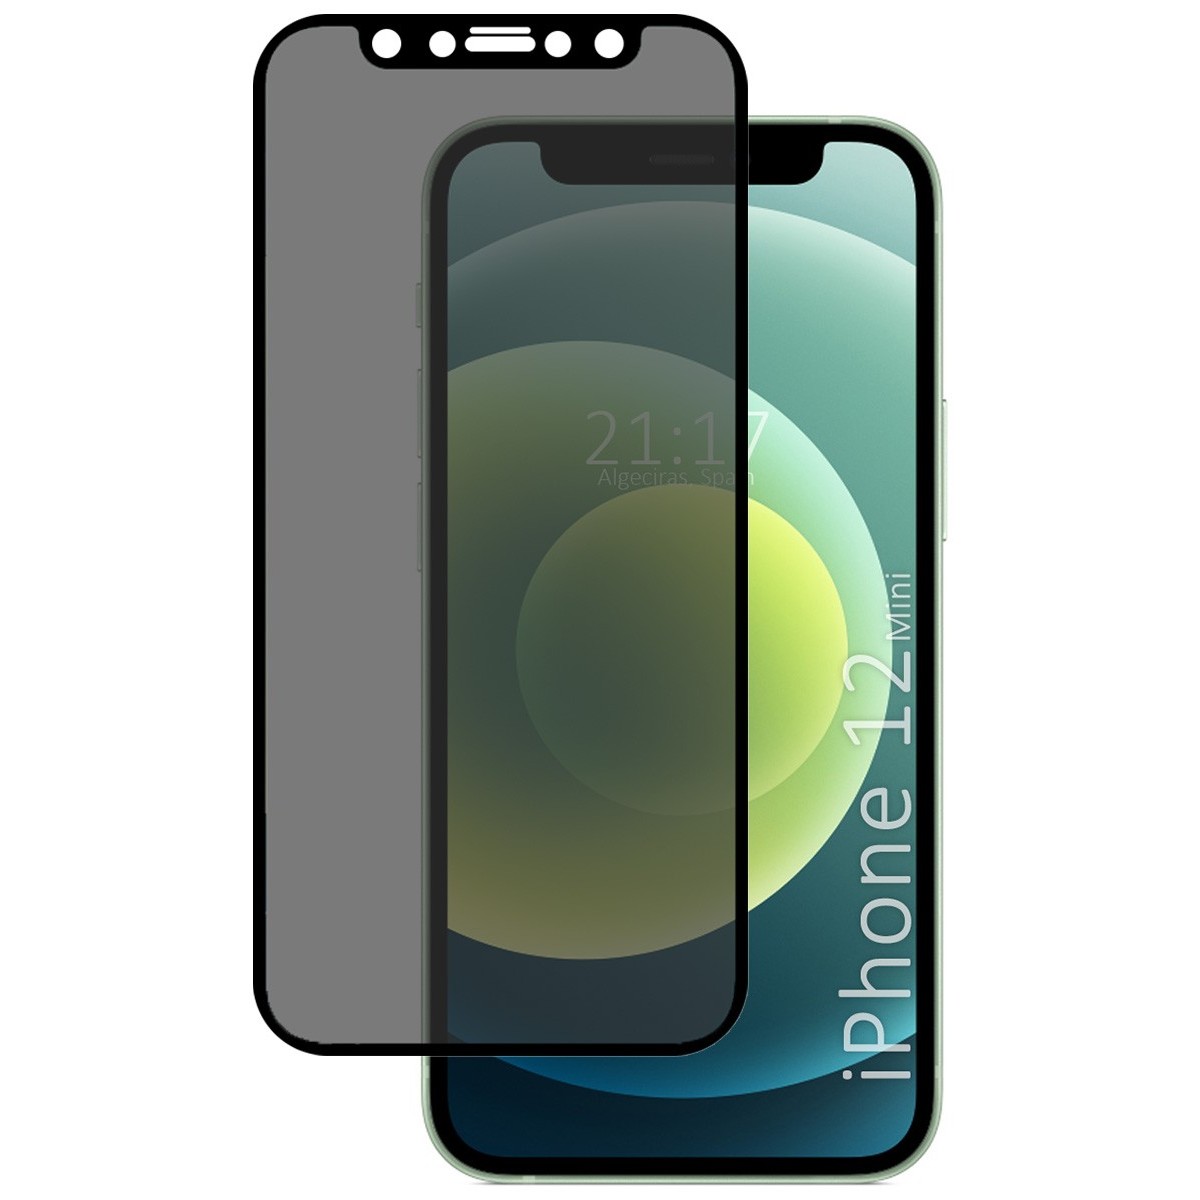 Protector Cristal Templado Completo 5D Antiespías para Iphone 12 Mini (5.4) Vidrio